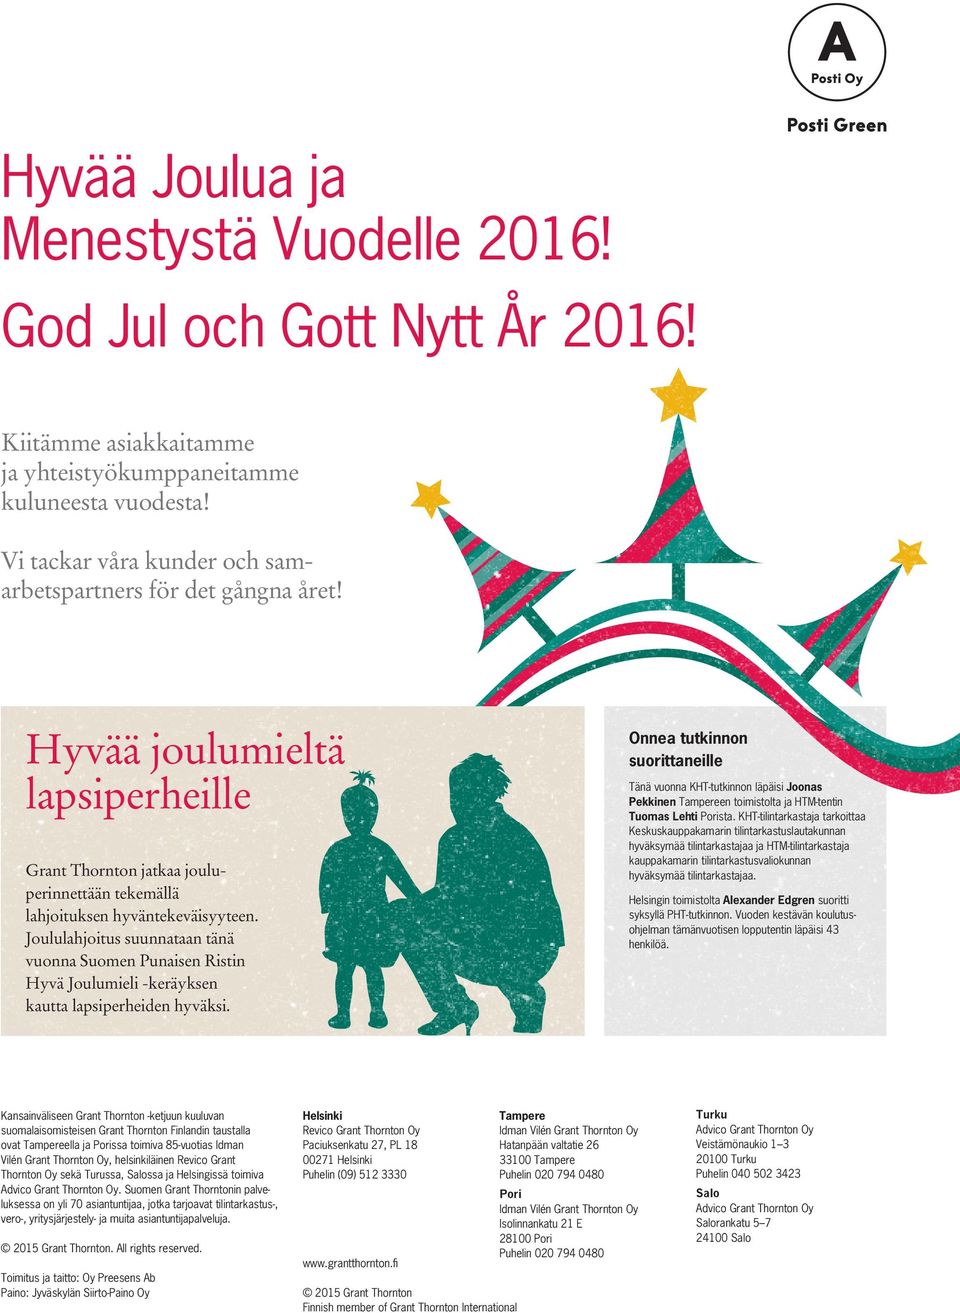 Joululahjoitus suunnataan tänä vuonna Suomen Punaisen Ristin Hyvä Joulumieli -keräyksen kautta lapsiperheiden hyväksi.